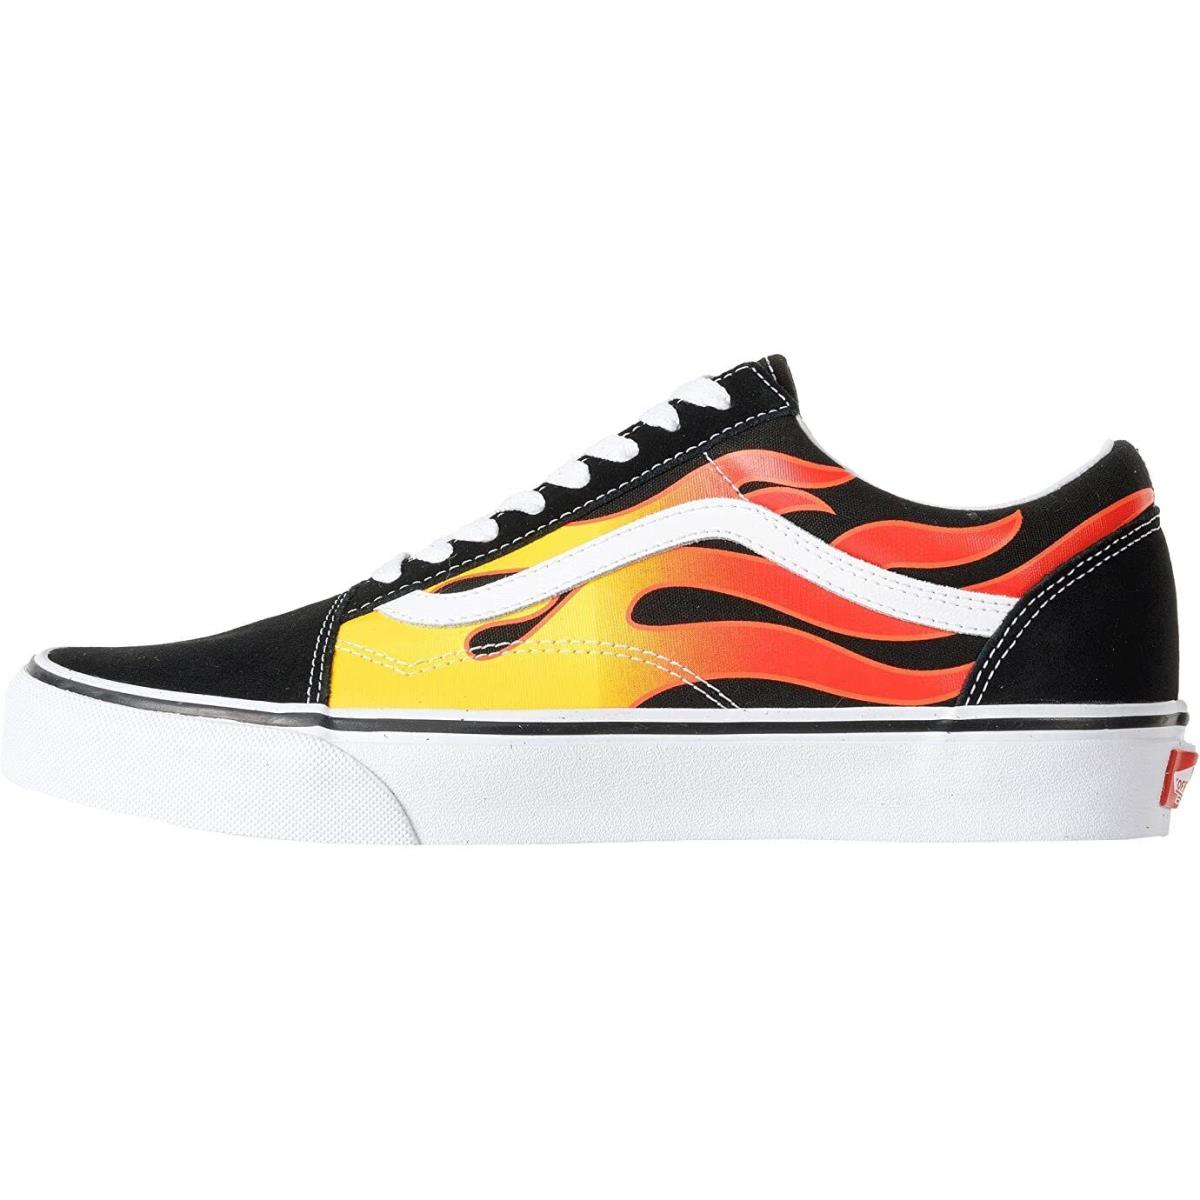 Vans Old Skool Unisex Suede Sneakers Mens Womens Skateboard Canvas Shoes Flame/Black/True White